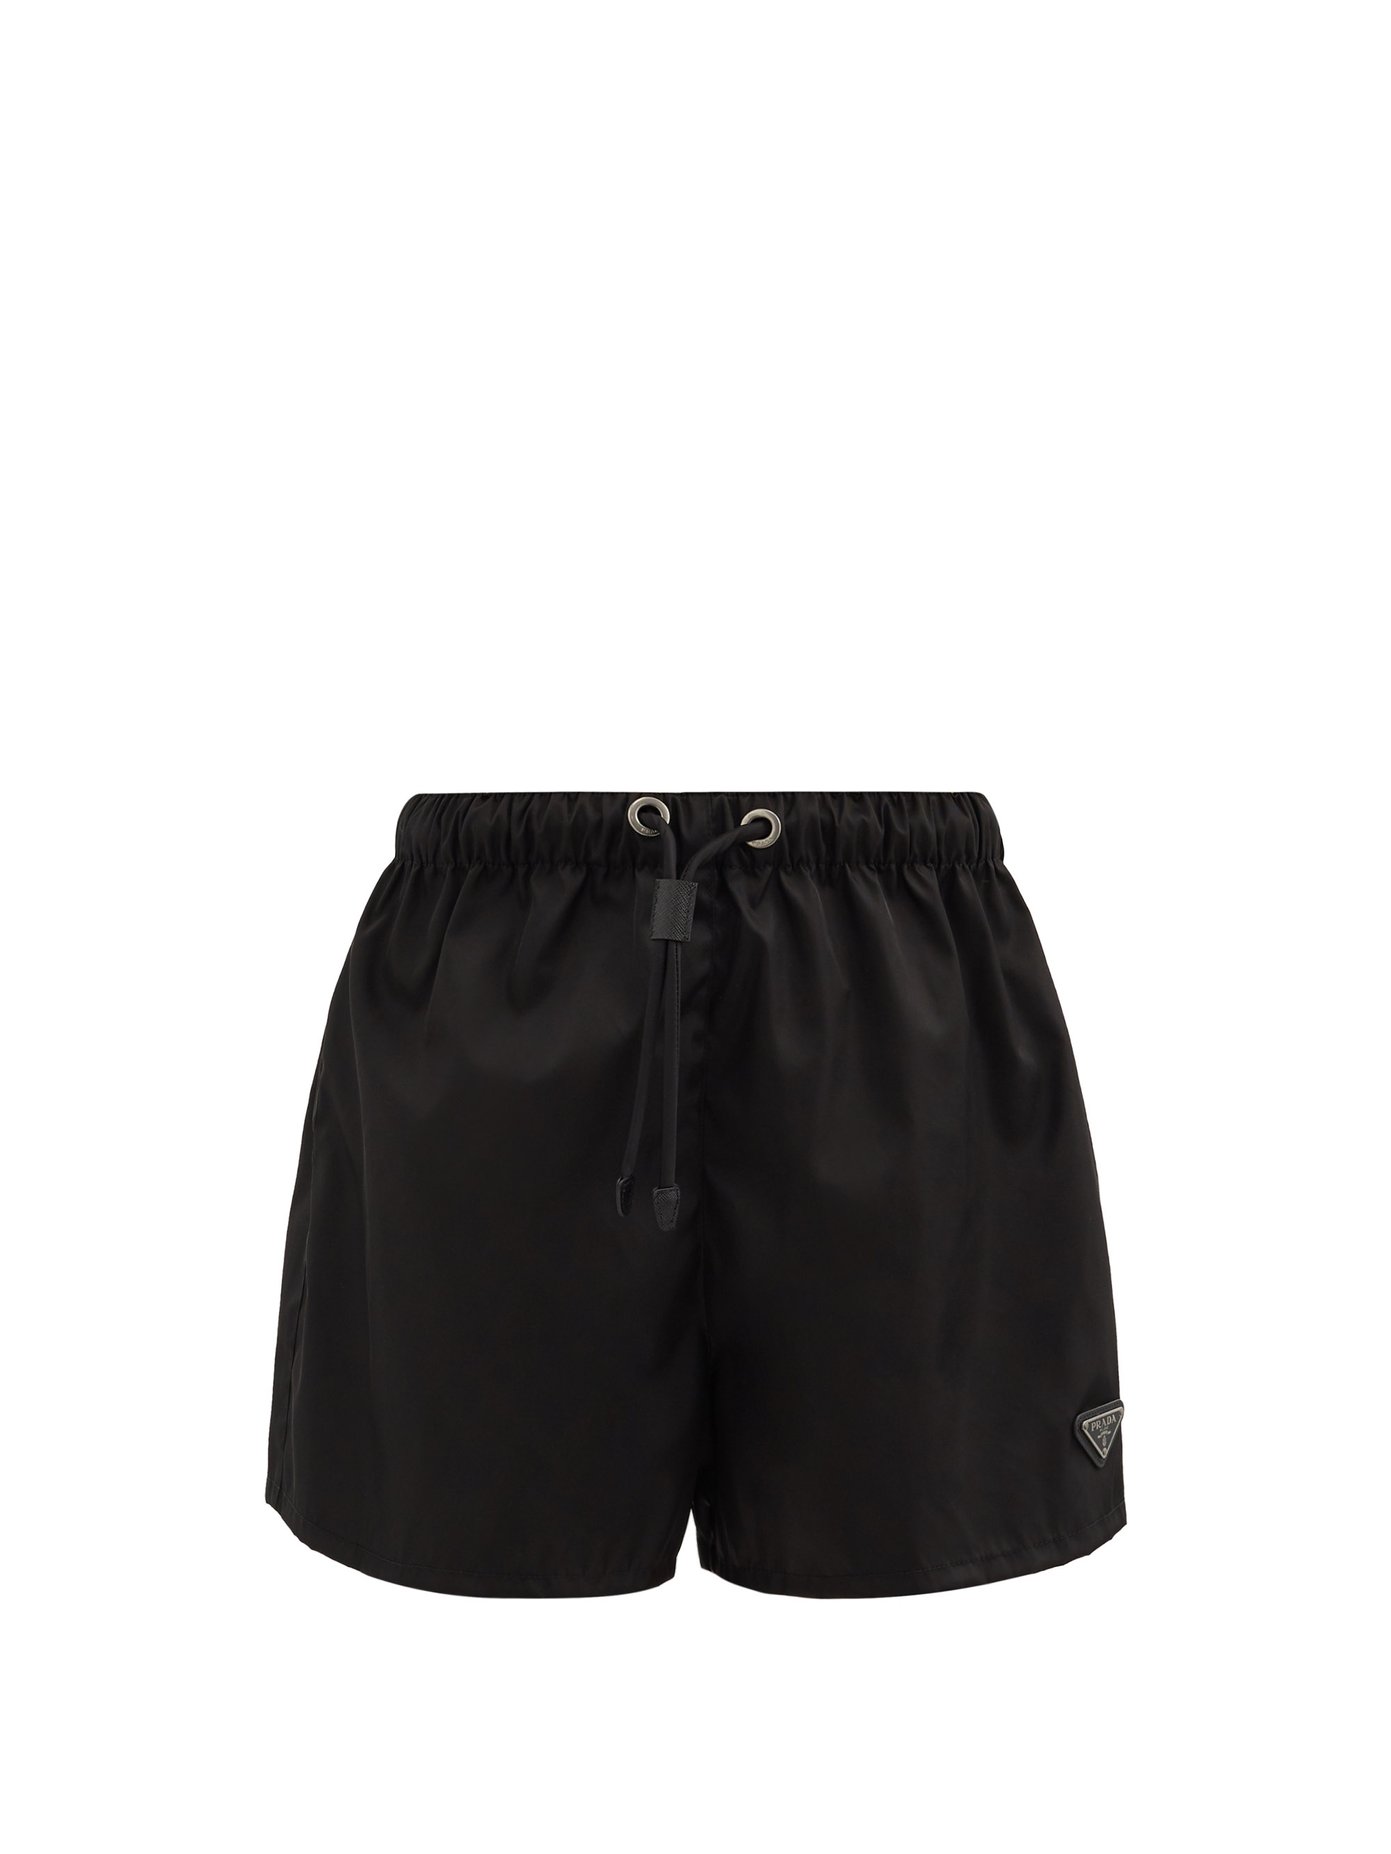 prada black shorts